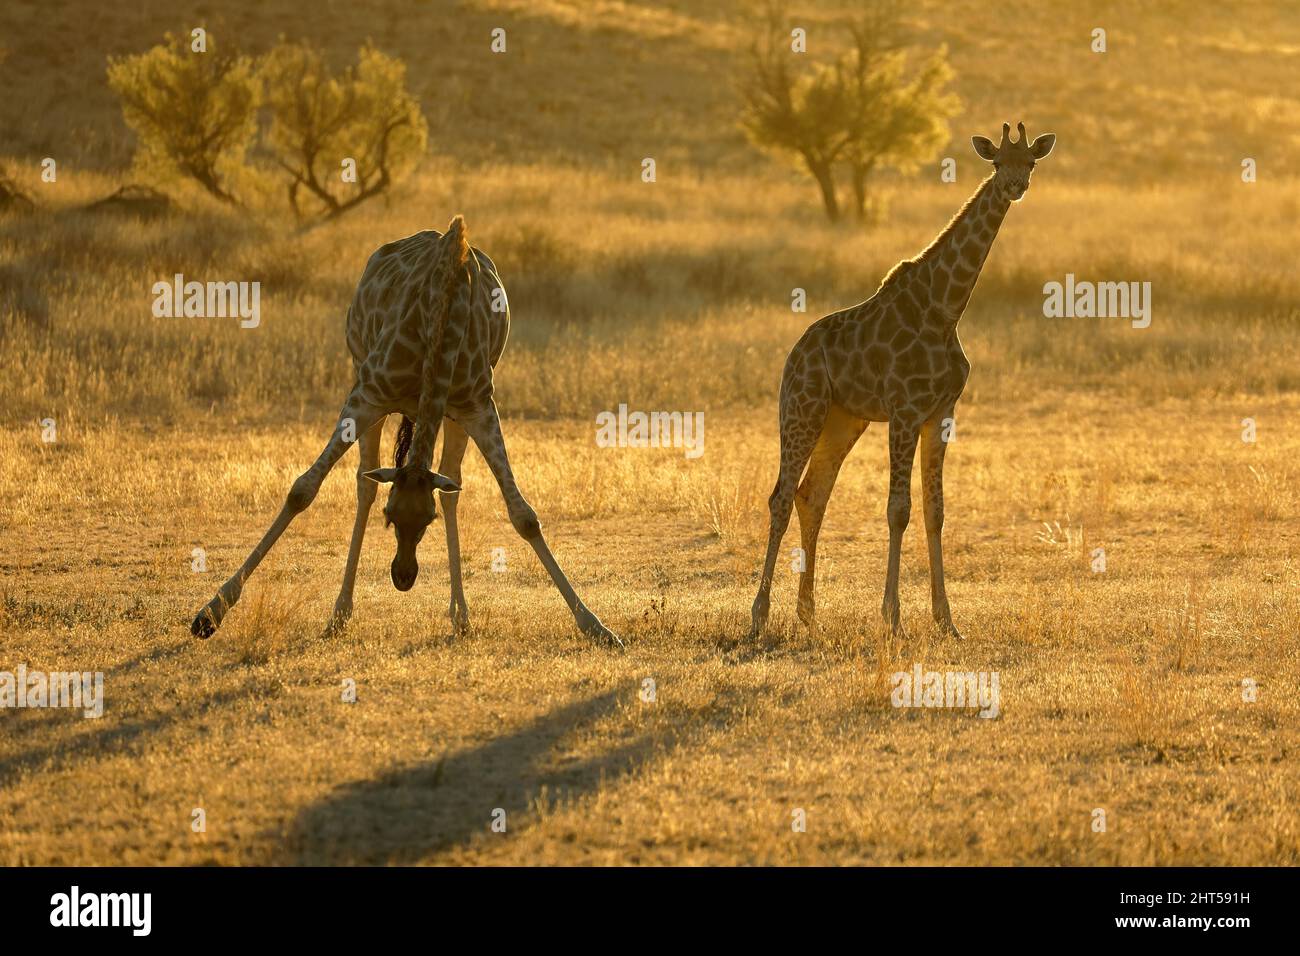 Girafe (Giraffa camelopardalis) silhouettée au lever du soleil, désert de Kalahari, Afrique du Sud Banque D'Images